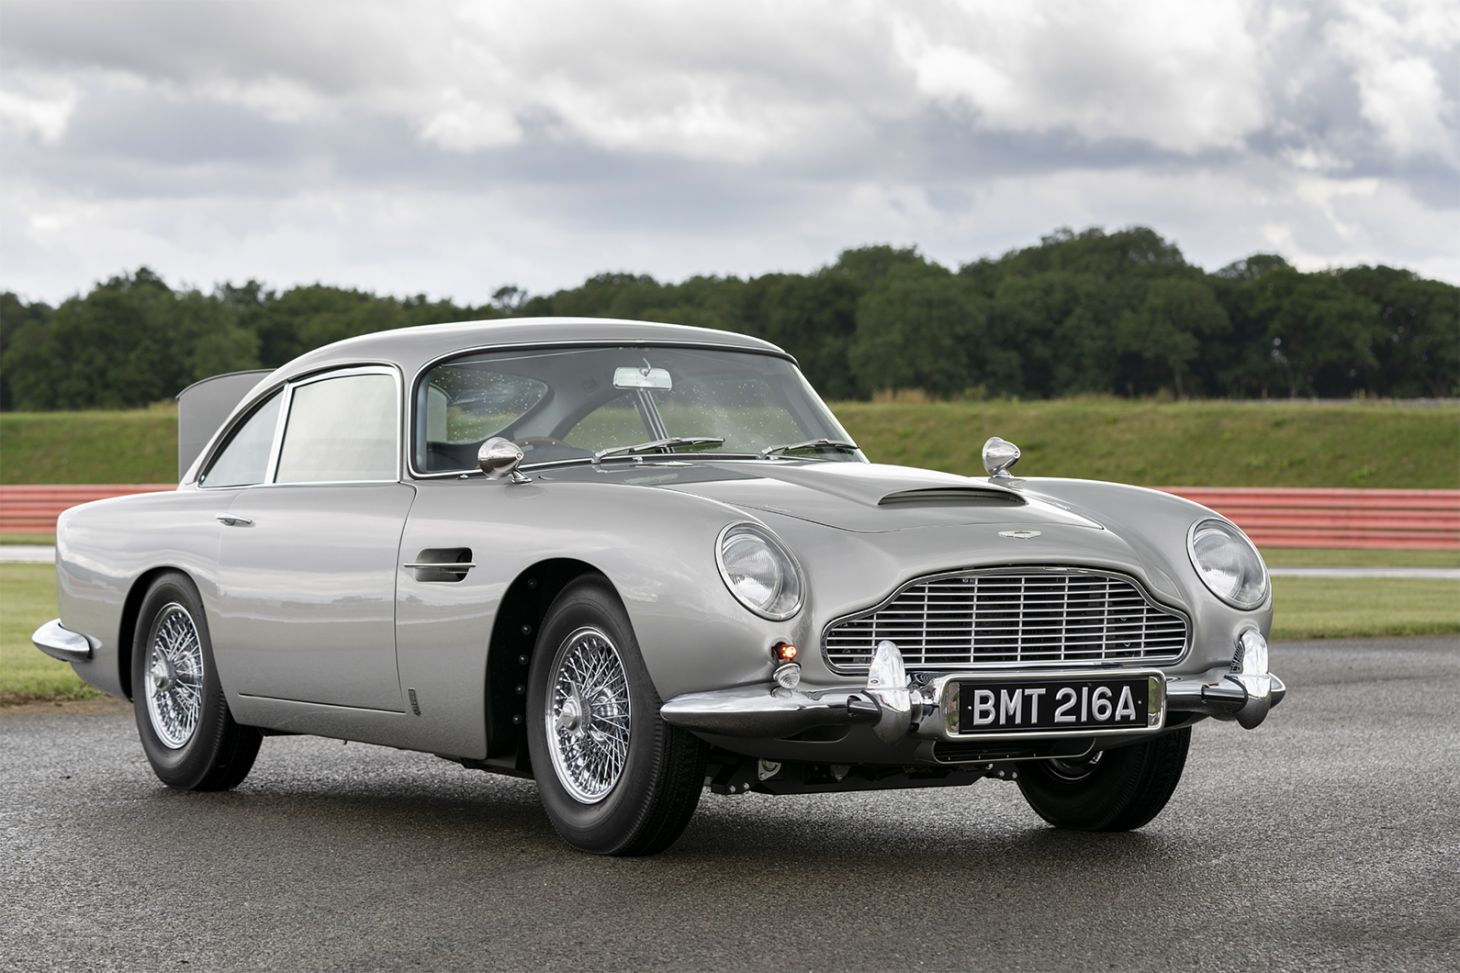 Aston Martin DB5 figura entre os carros clássicos mais icônicos